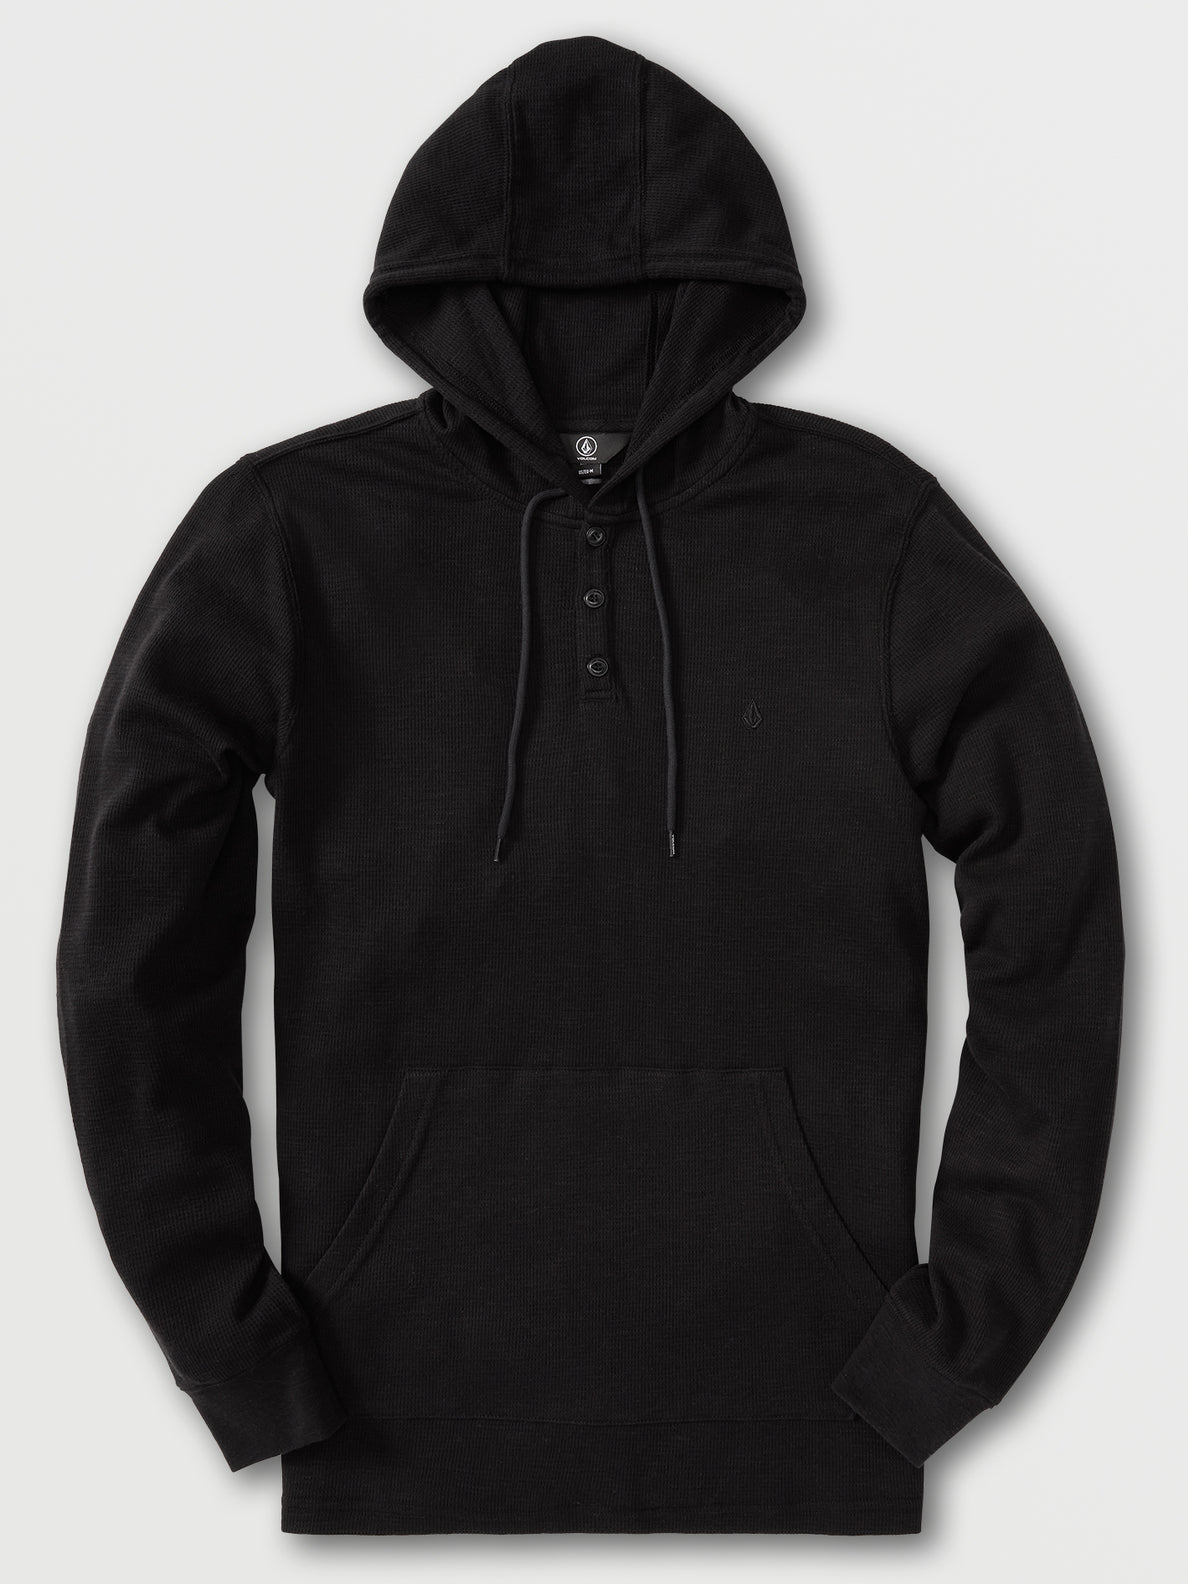 Murph Thermal Long Sleeve Shirt - Black (A5332200_BLK) [F]